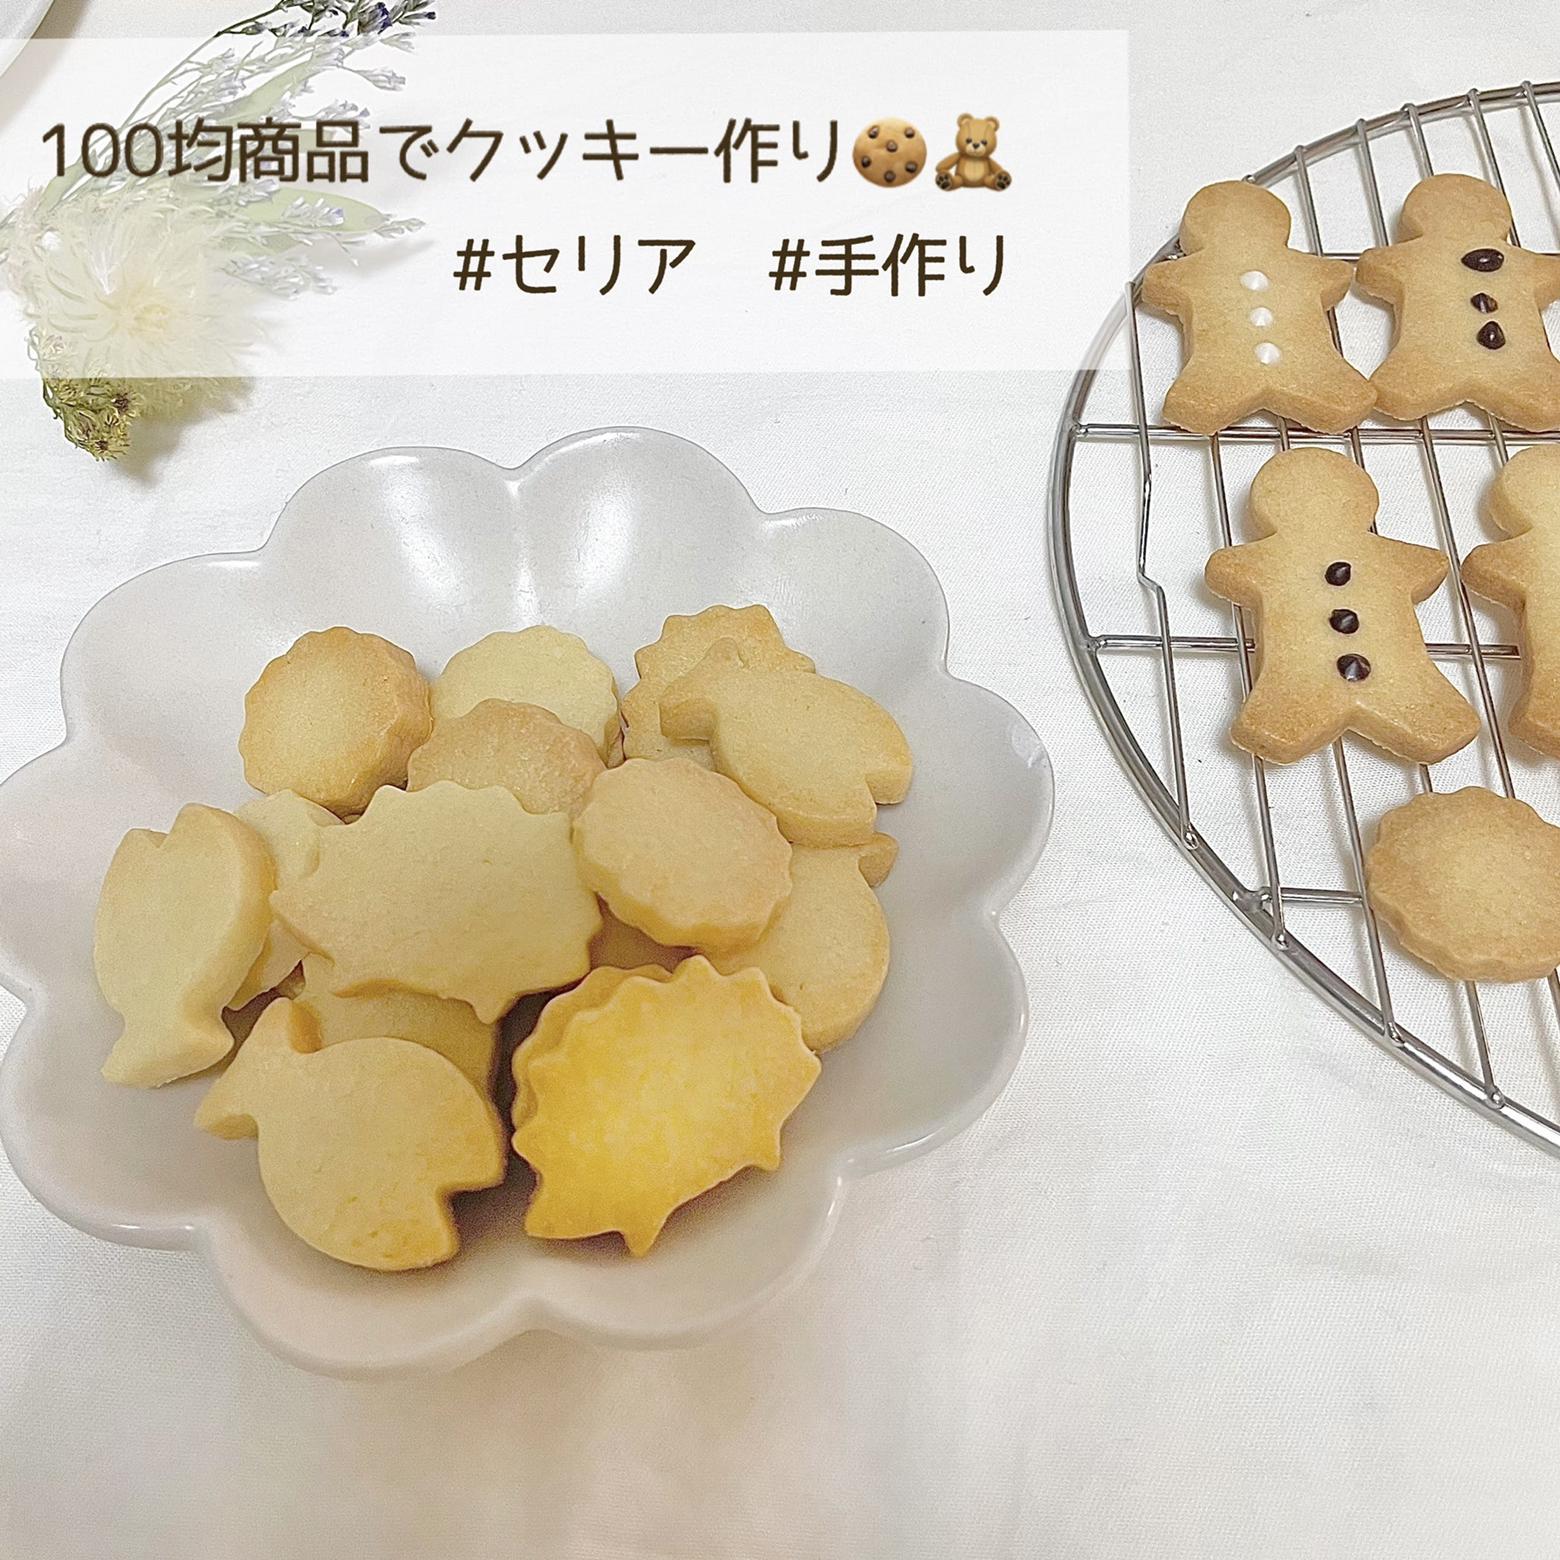 100均グッツで可愛いクッキー作り アンナ が投稿したフォトブック Lemon8